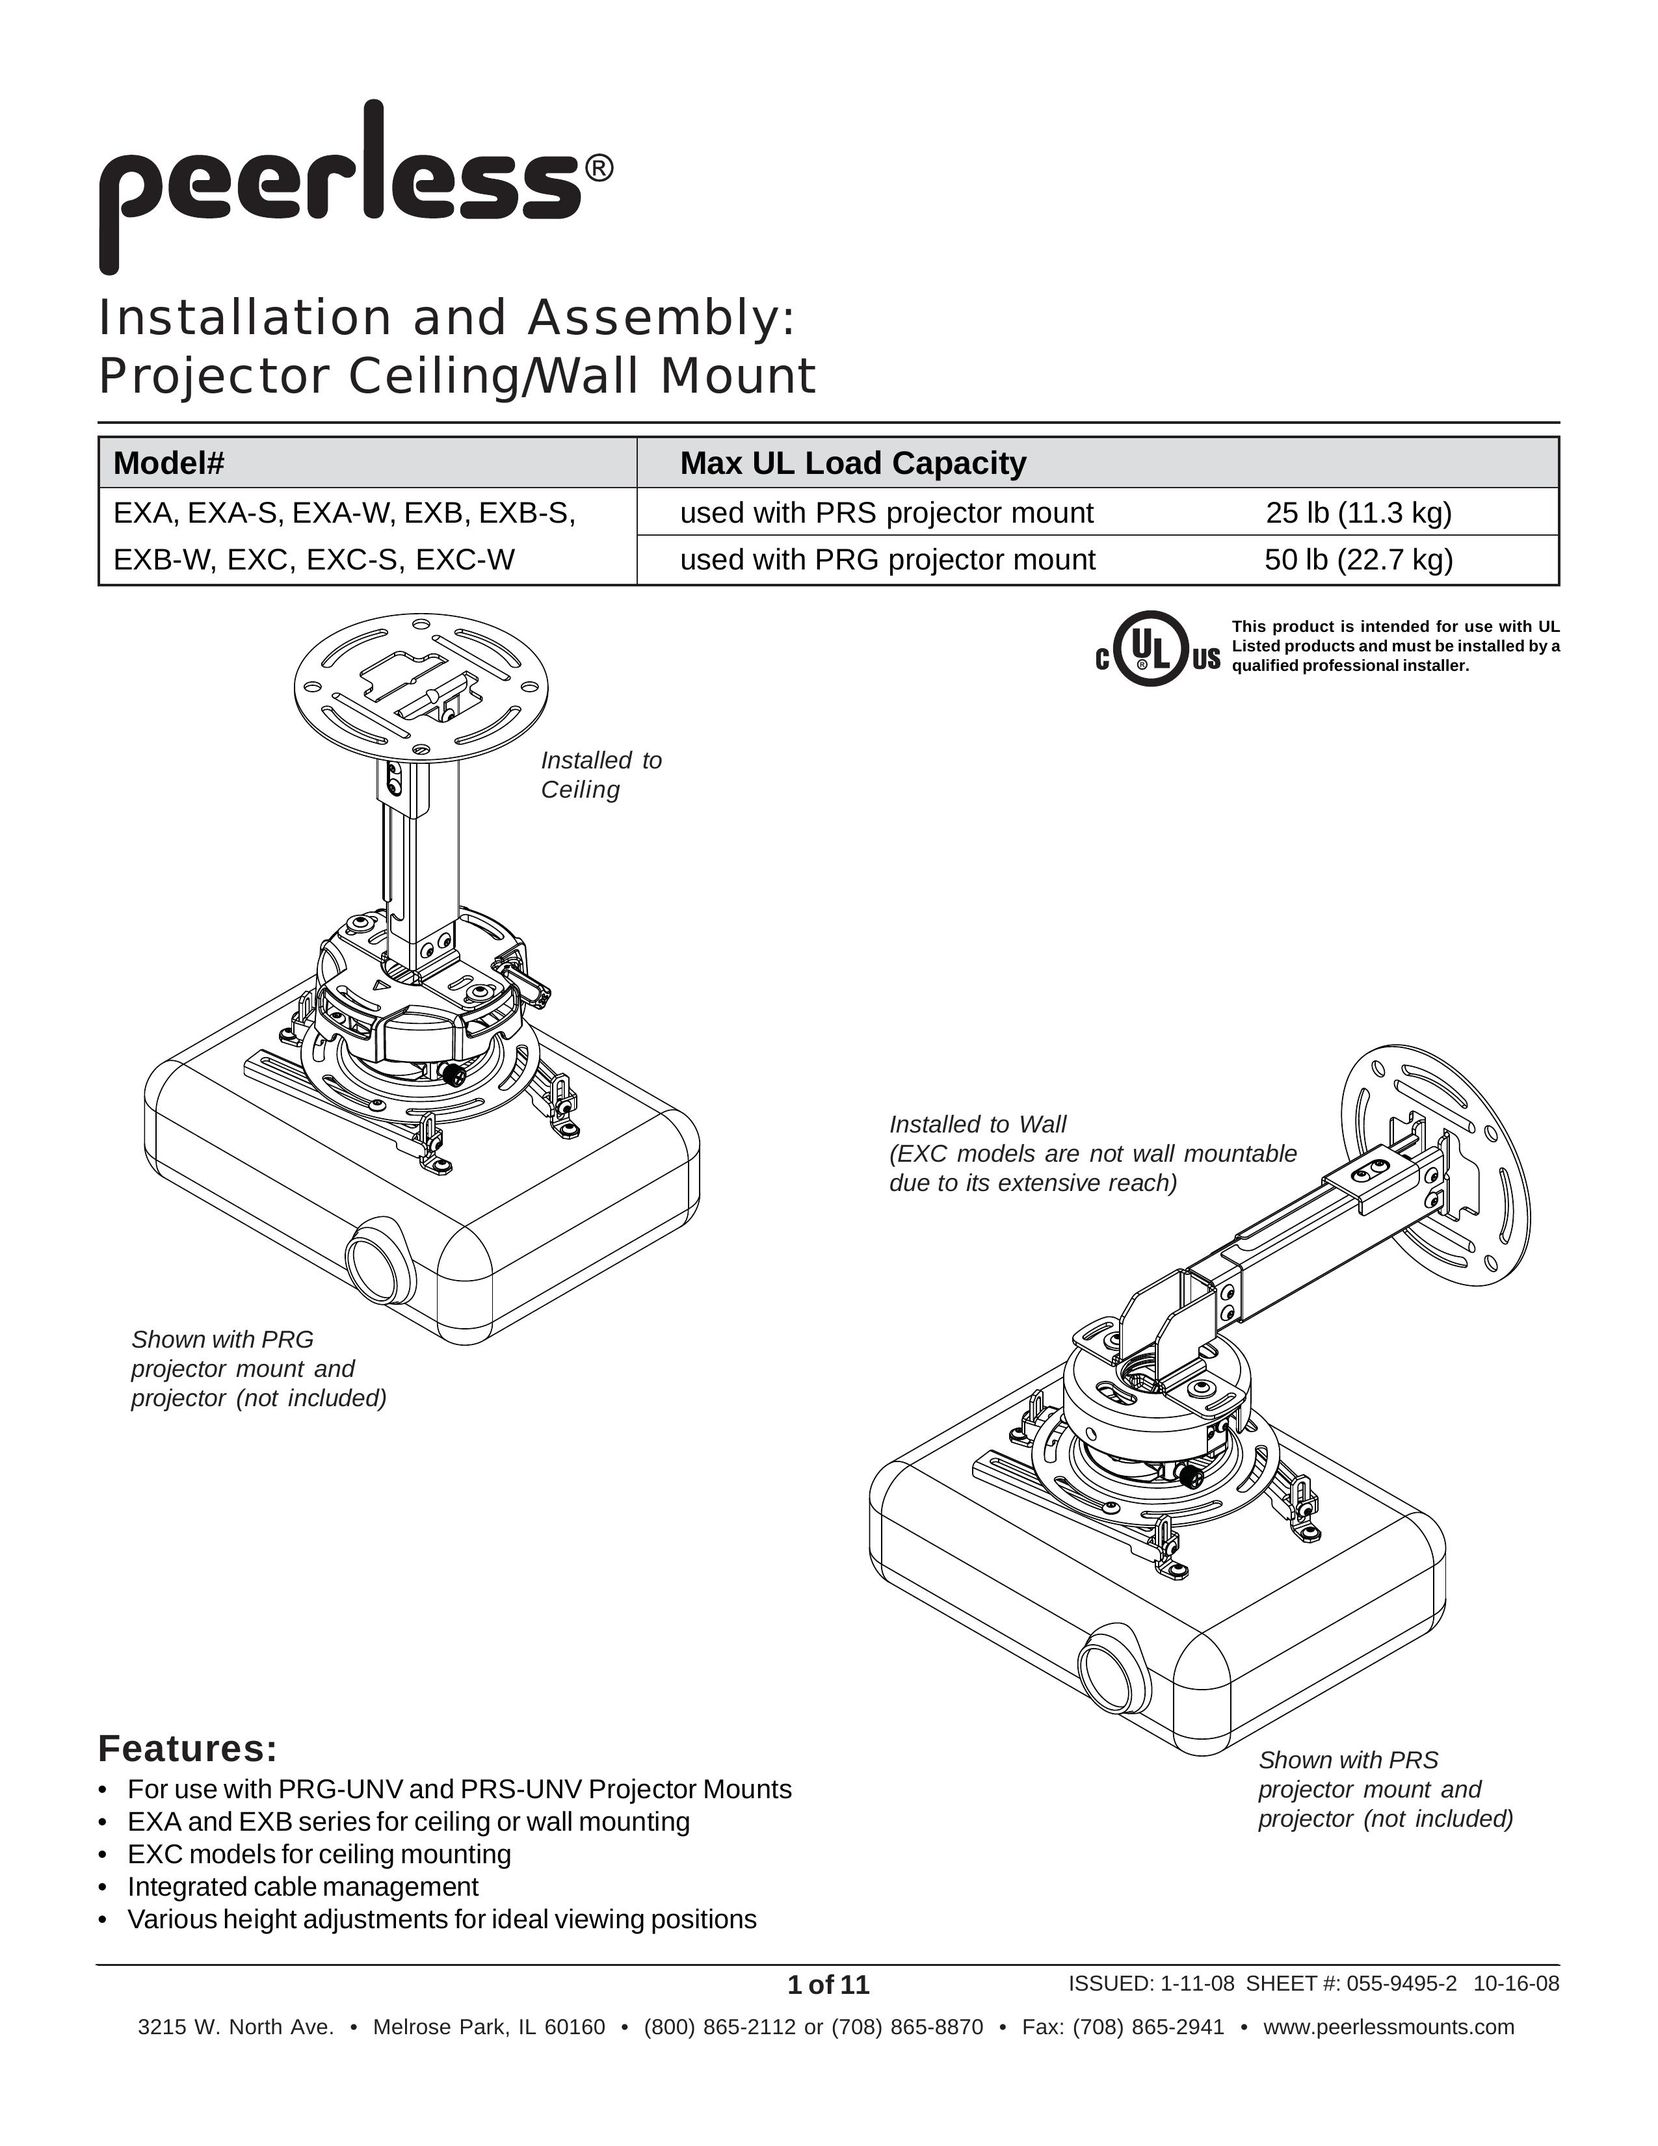 Peerless Industries EXC-S Projector User Manual